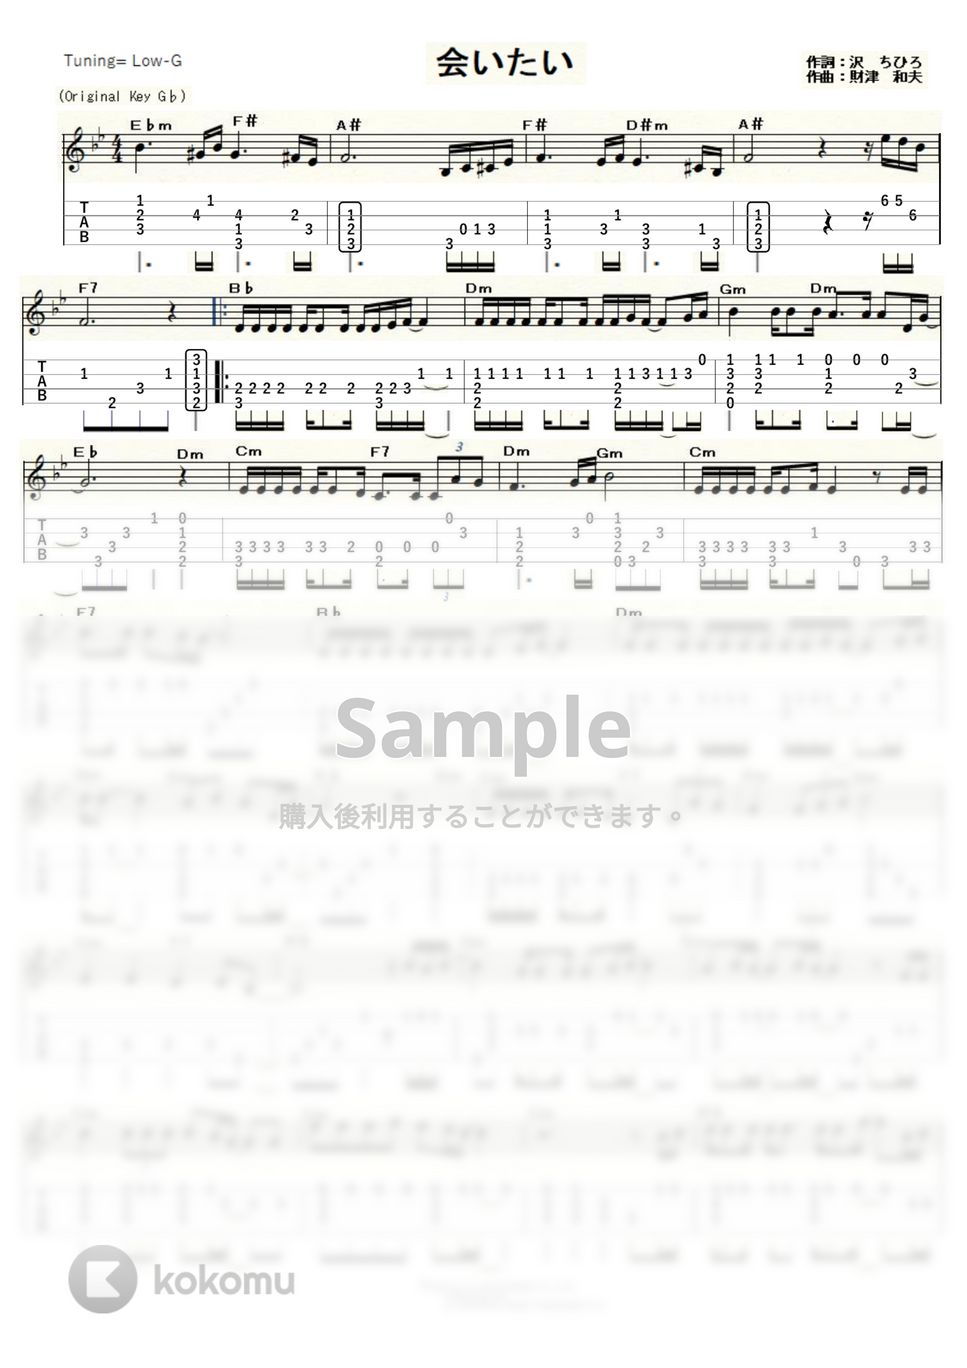 沢田知可子 - 会いたい (ｳｸﾚﾚｿﾛ / Low-G / 上級) by ukulelepapa